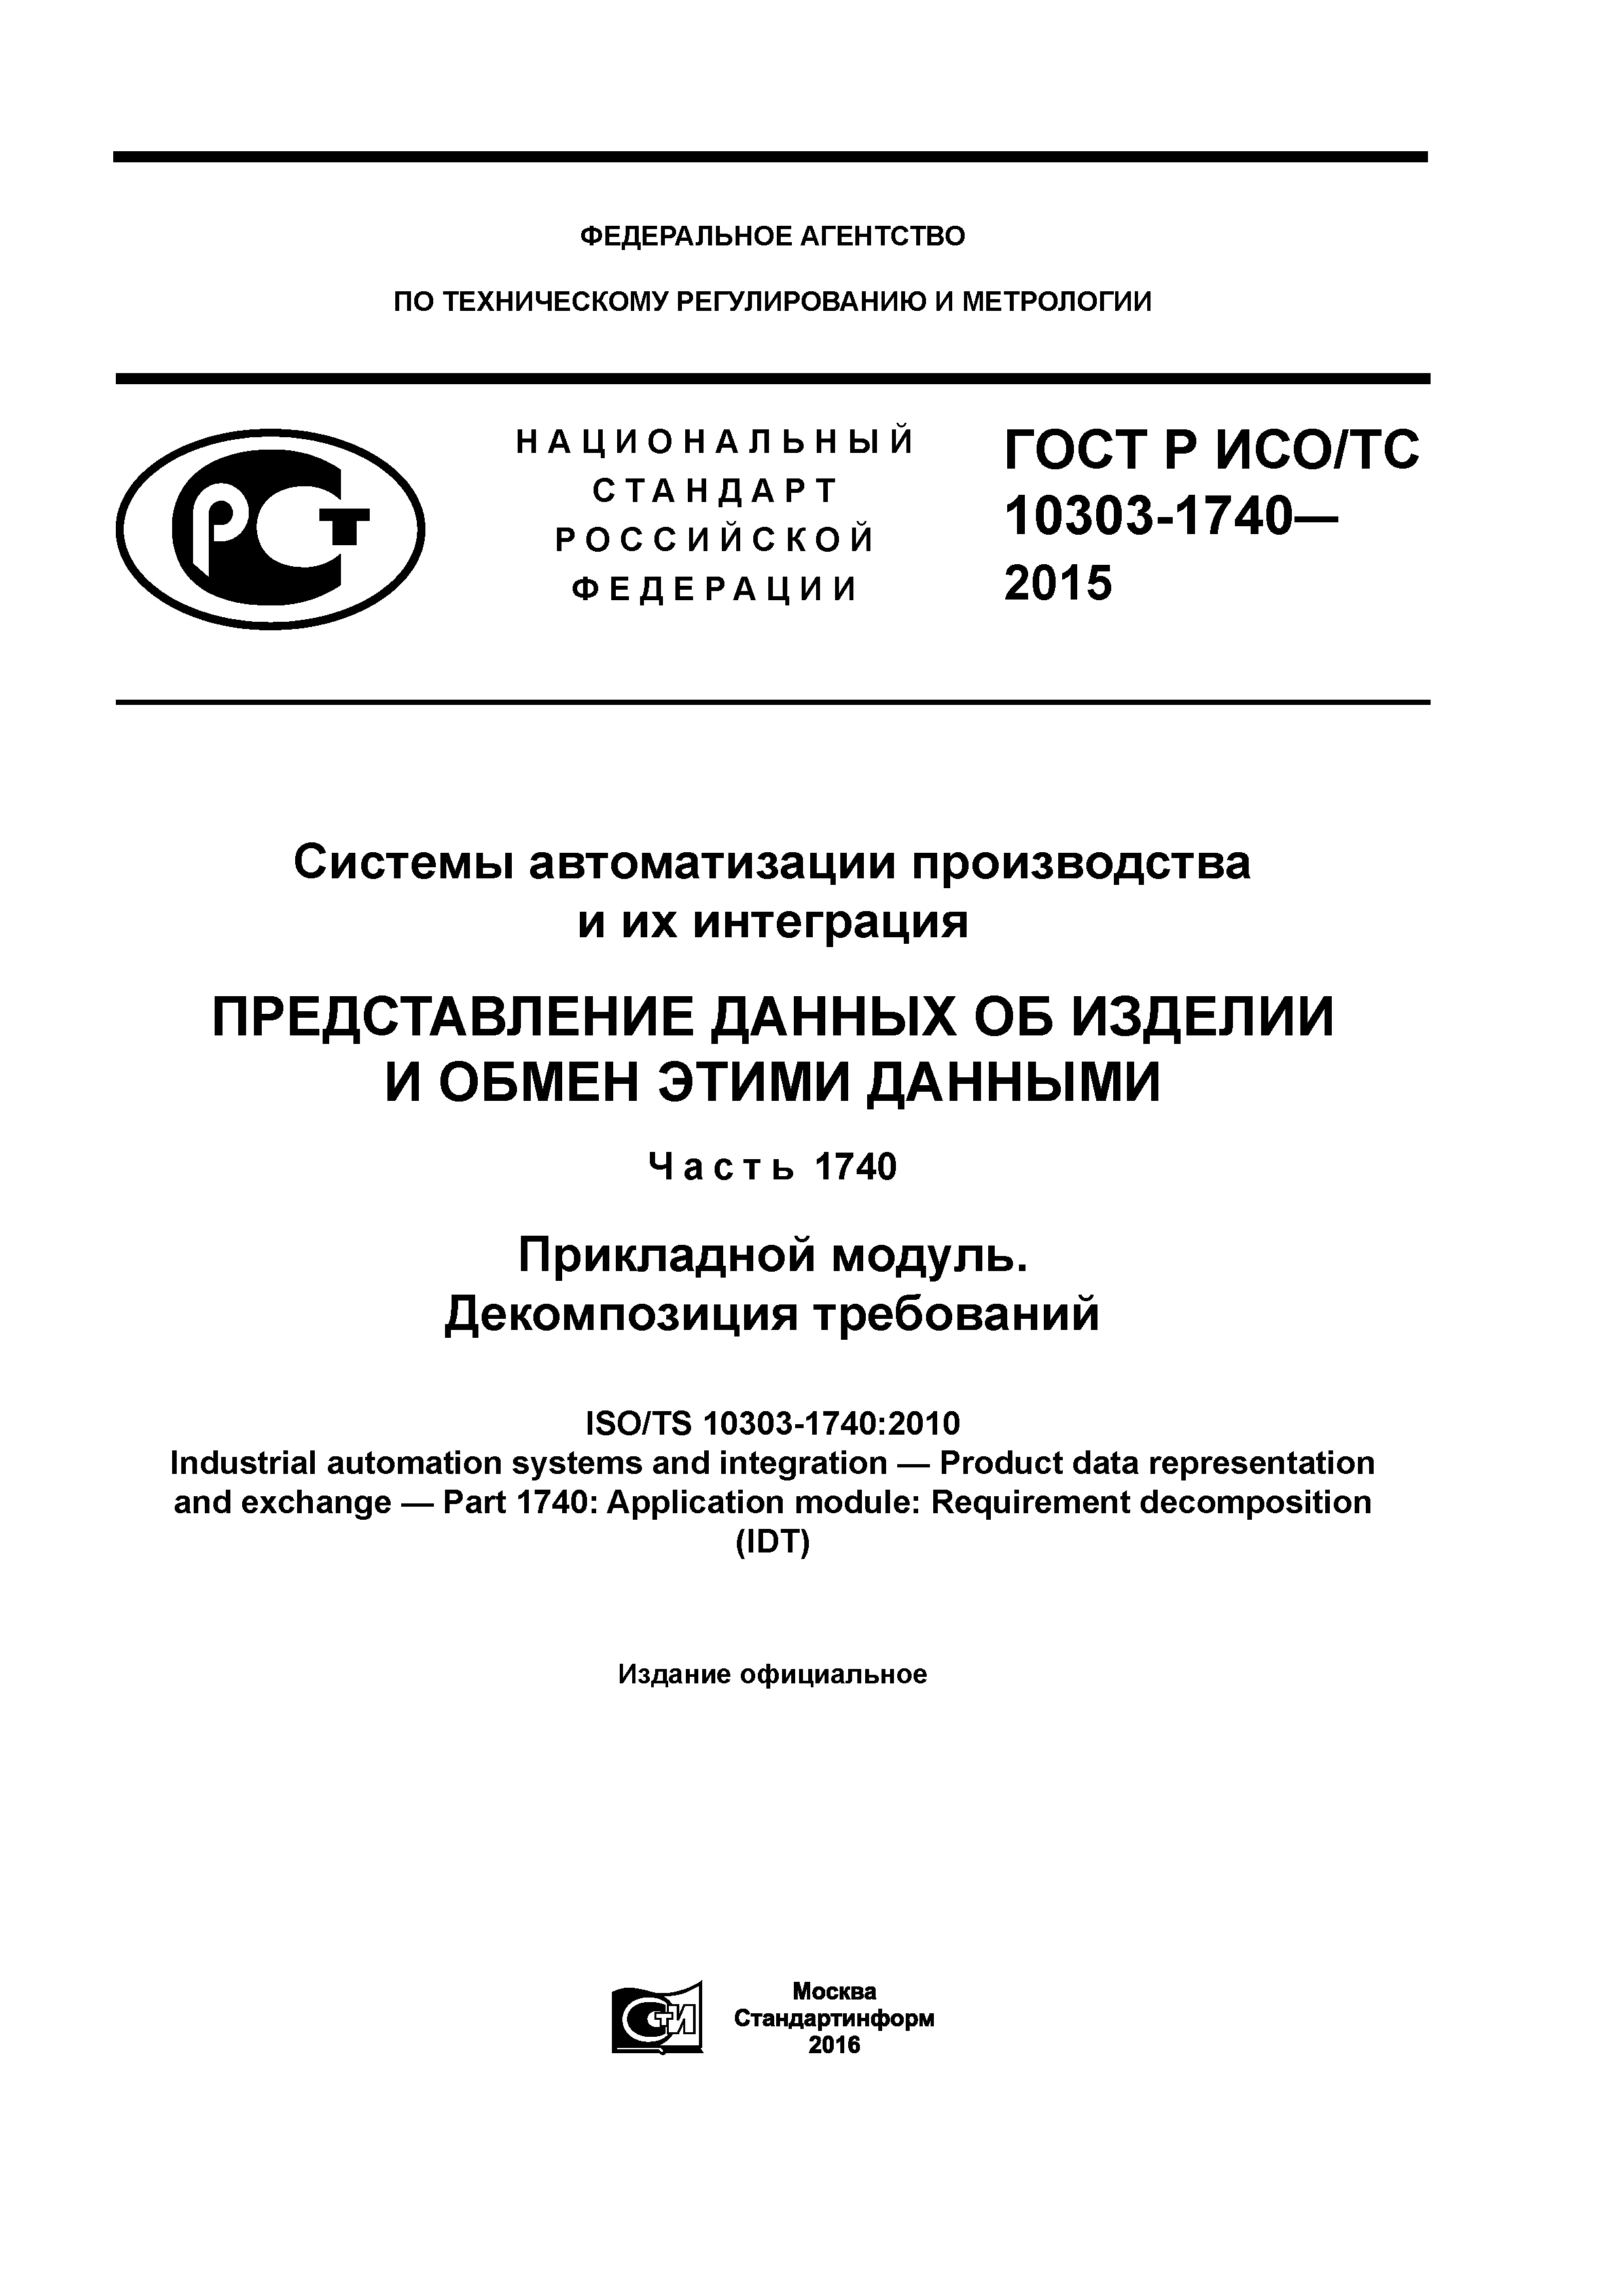 ГОСТ Р ИСО/ТС 10303-1740-2015